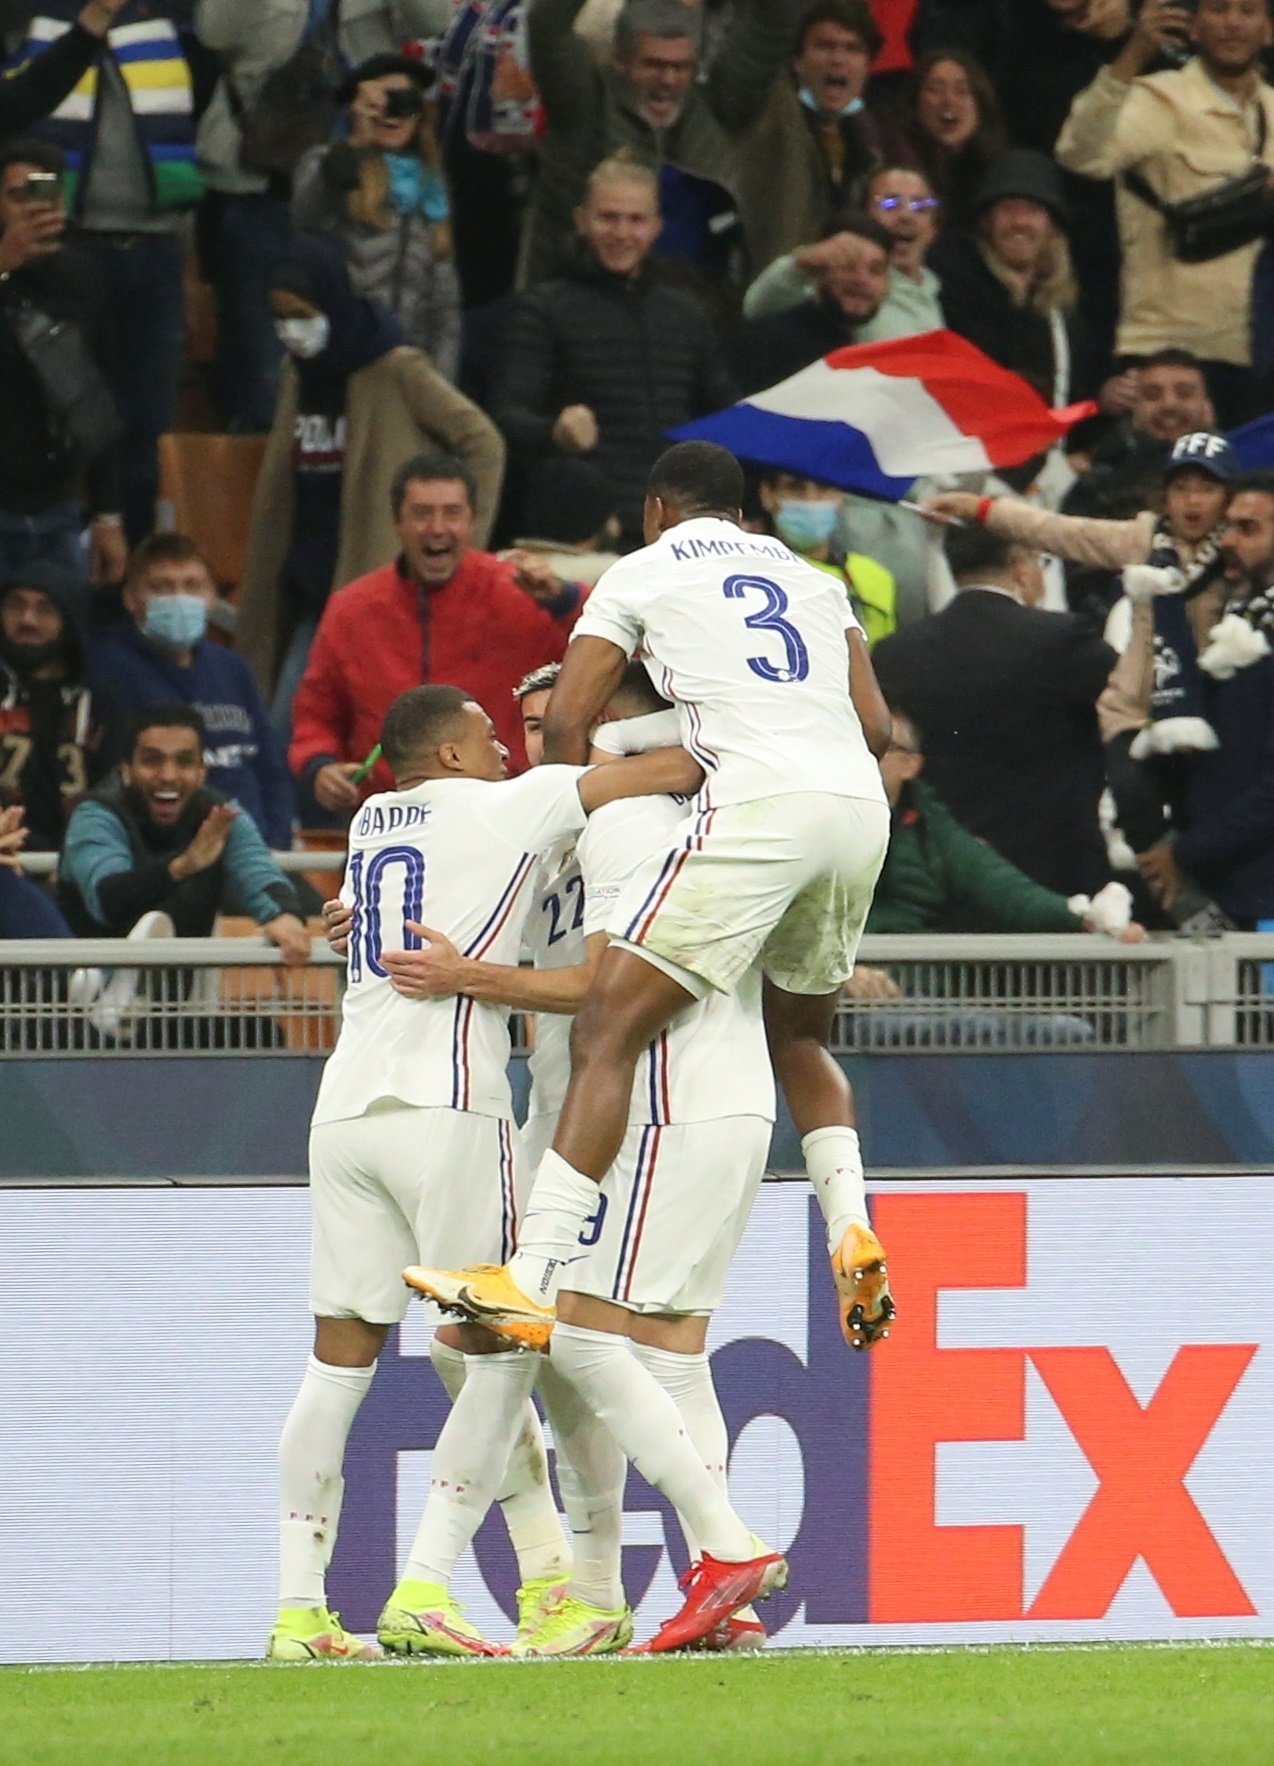 França s'imposa amb polèmica a Espanya a la final de la Nations League (1-2)